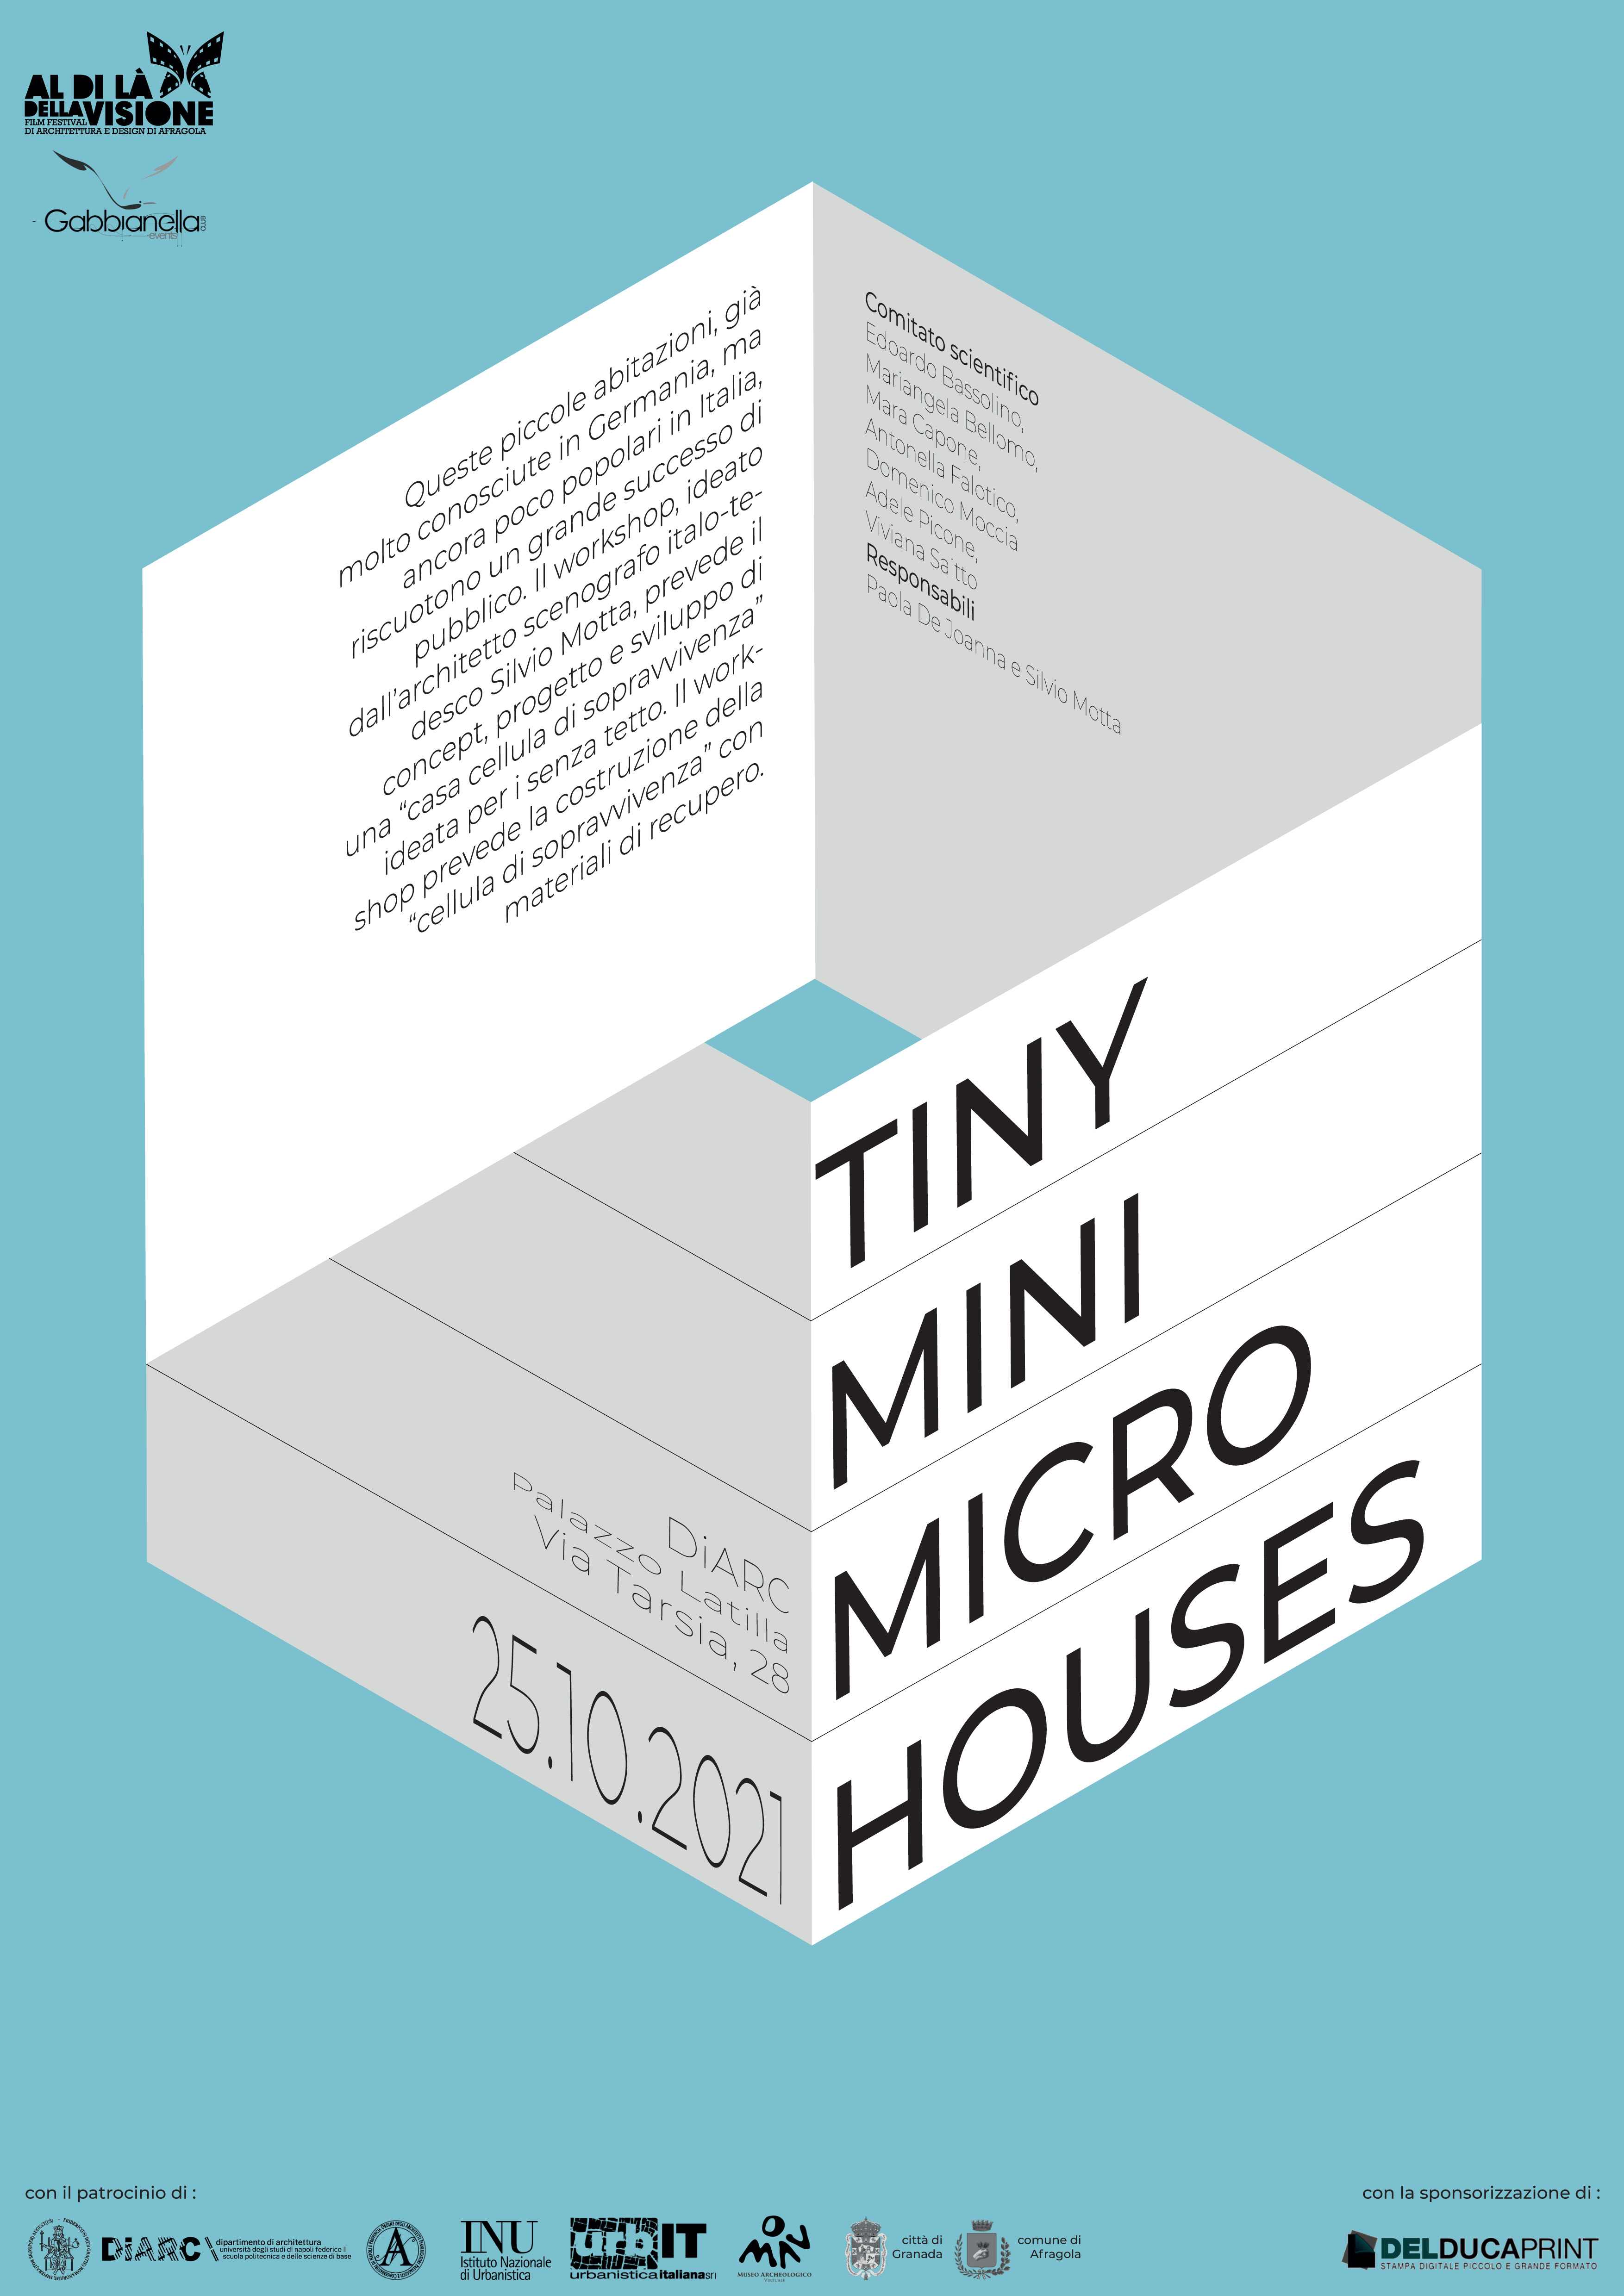 TINY MINI MICRO HOUSES 1